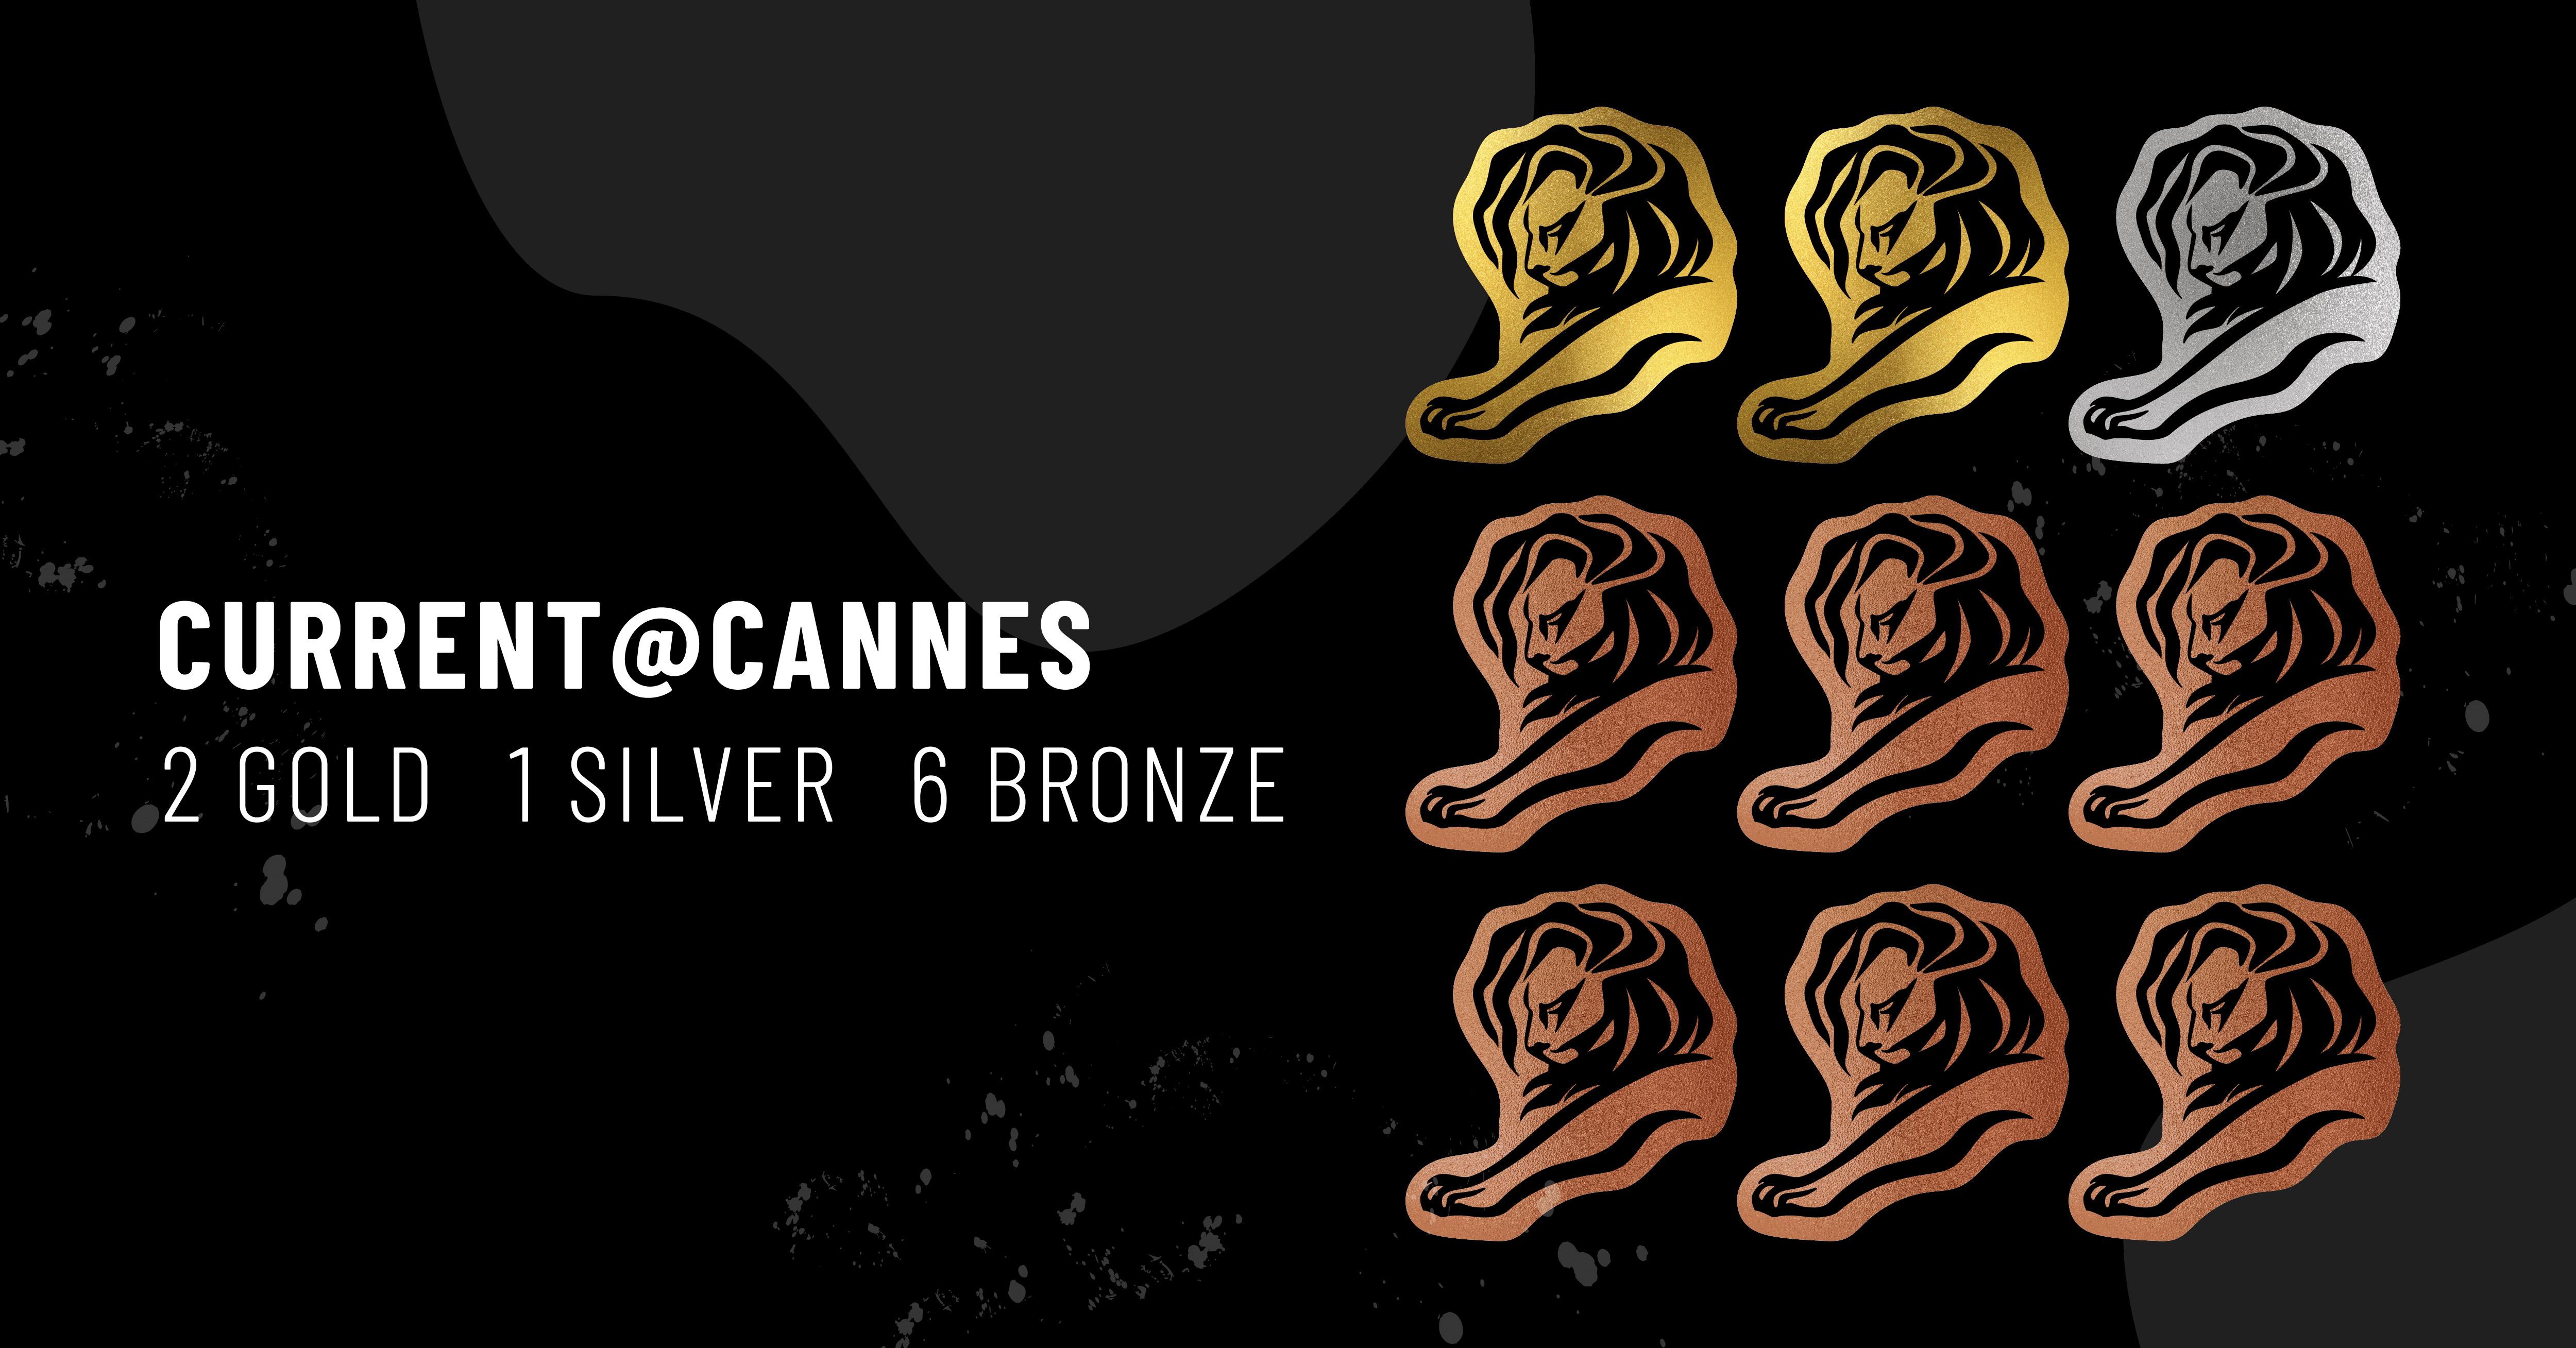 A imagem apresenta o ícone de 9 Leões de Cannes com um texto que diz: Current @ Cannes - 2 Gold, 1 Silver, 6 Bronze.